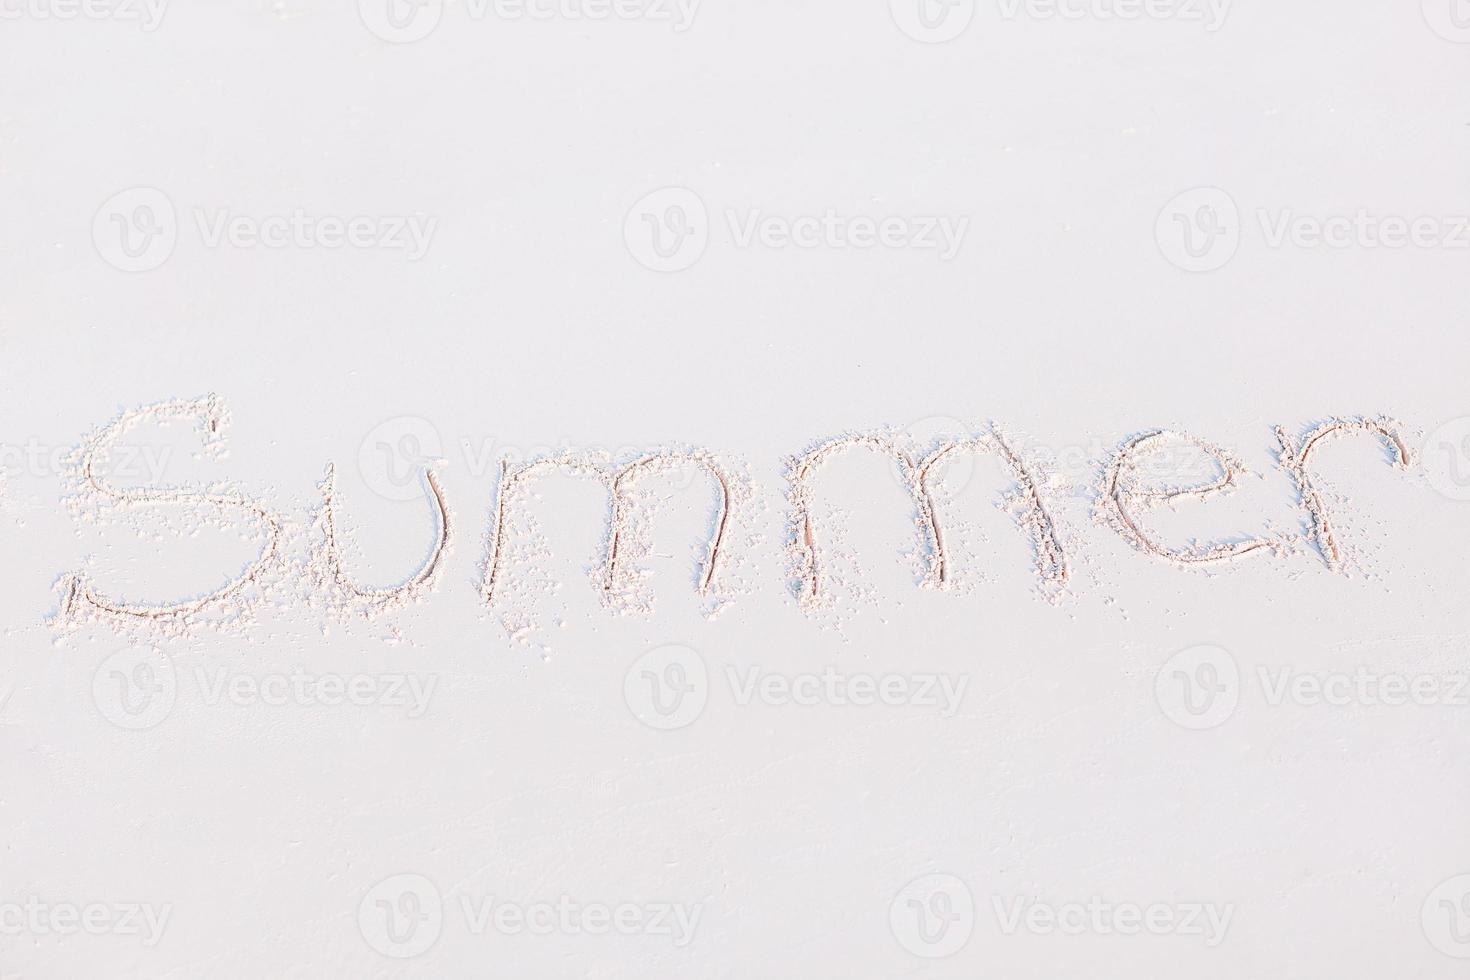 Wort Sommer handschriftlich am Sandstrand mit sanften Meereswellen im Hintergrund foto